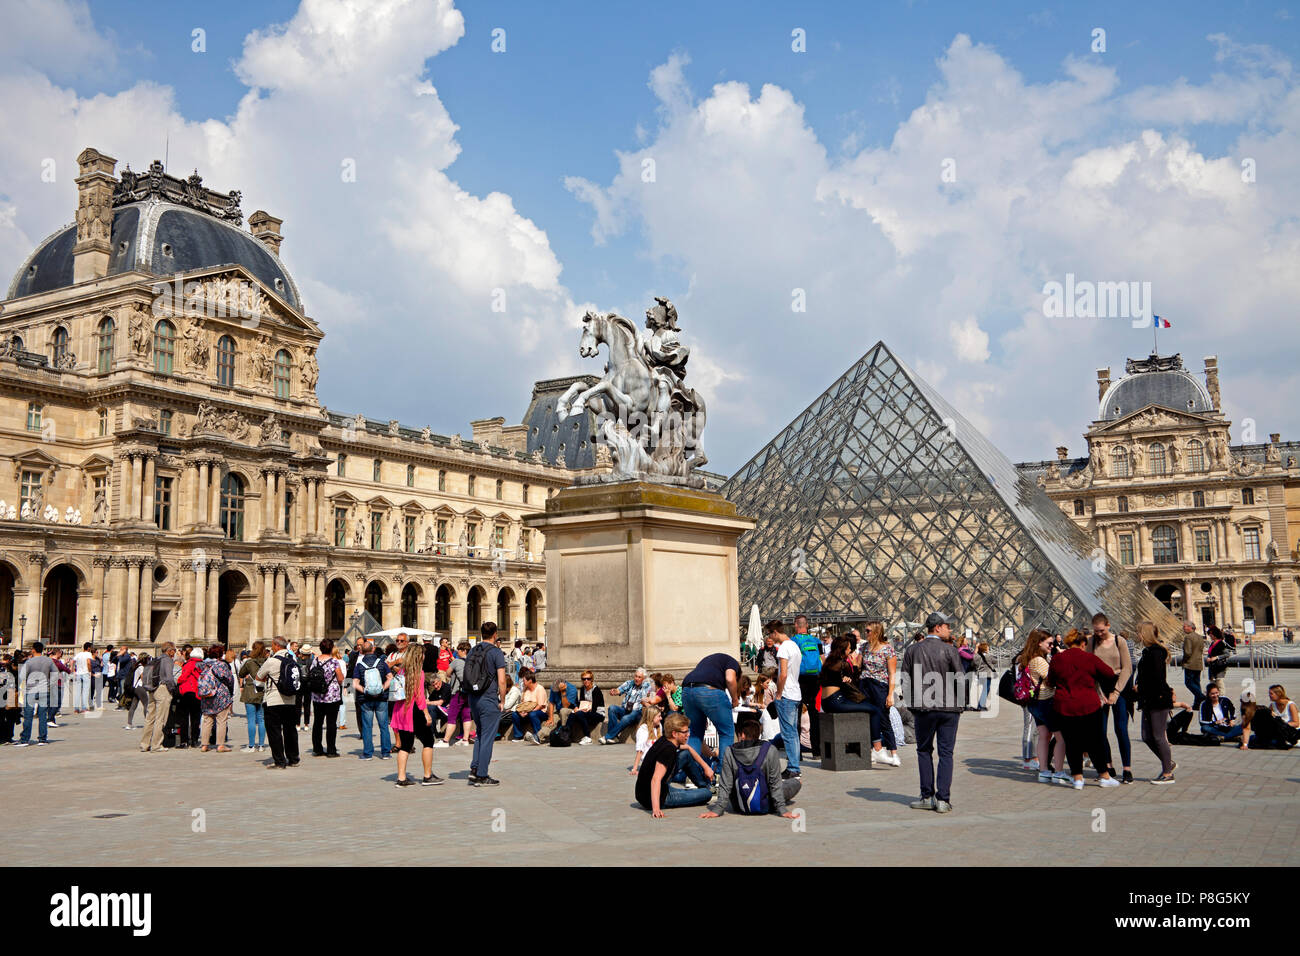 Le palais du Louvre, Paris, de l'Europe Banque D'Images